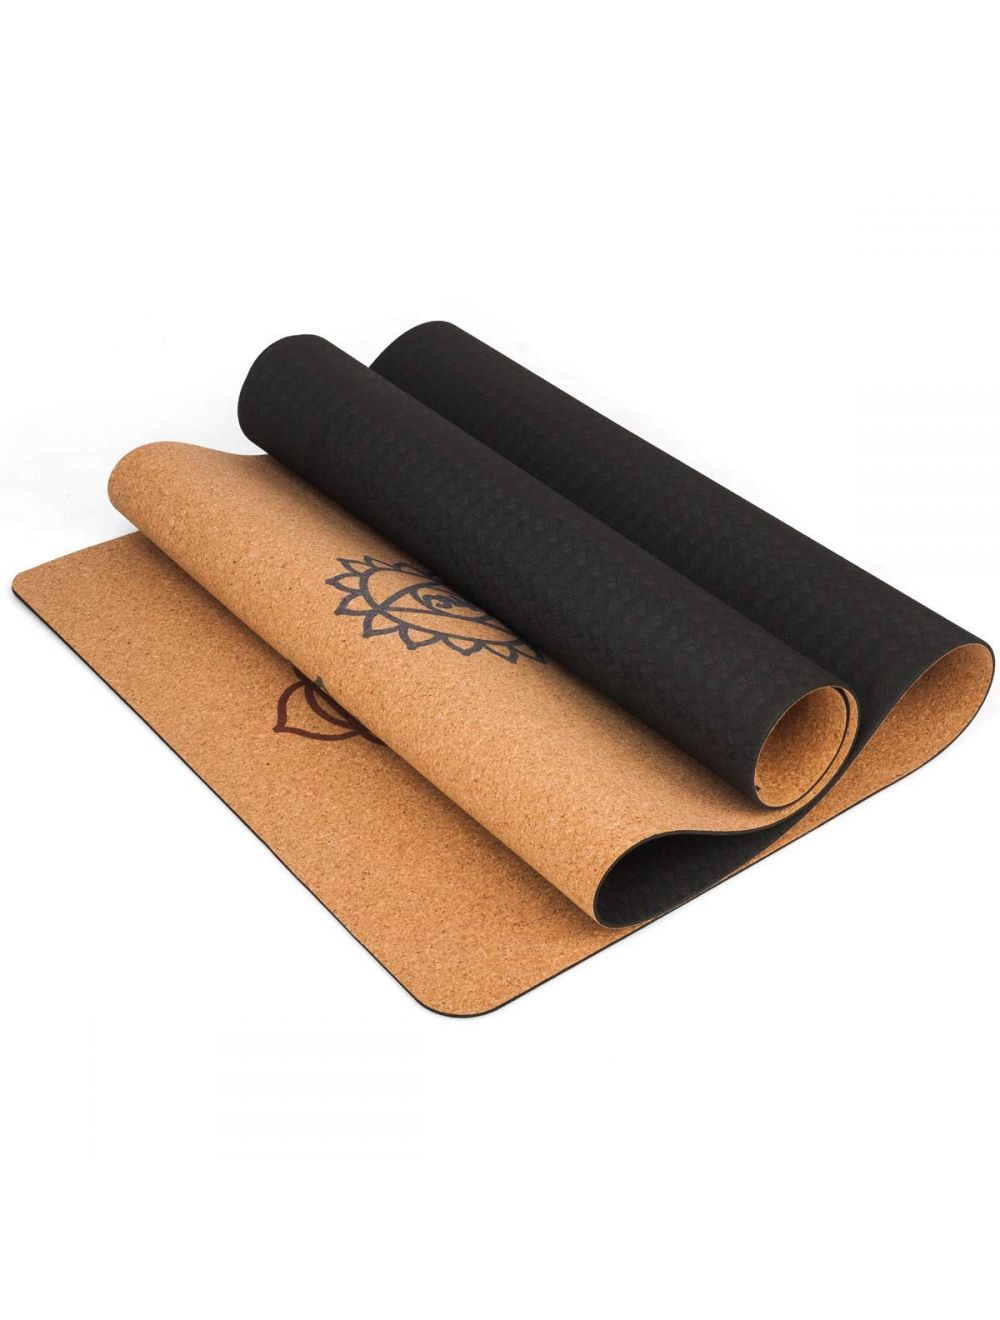 Premium Cork Natural Rubber Skid Proof Yoga Mat